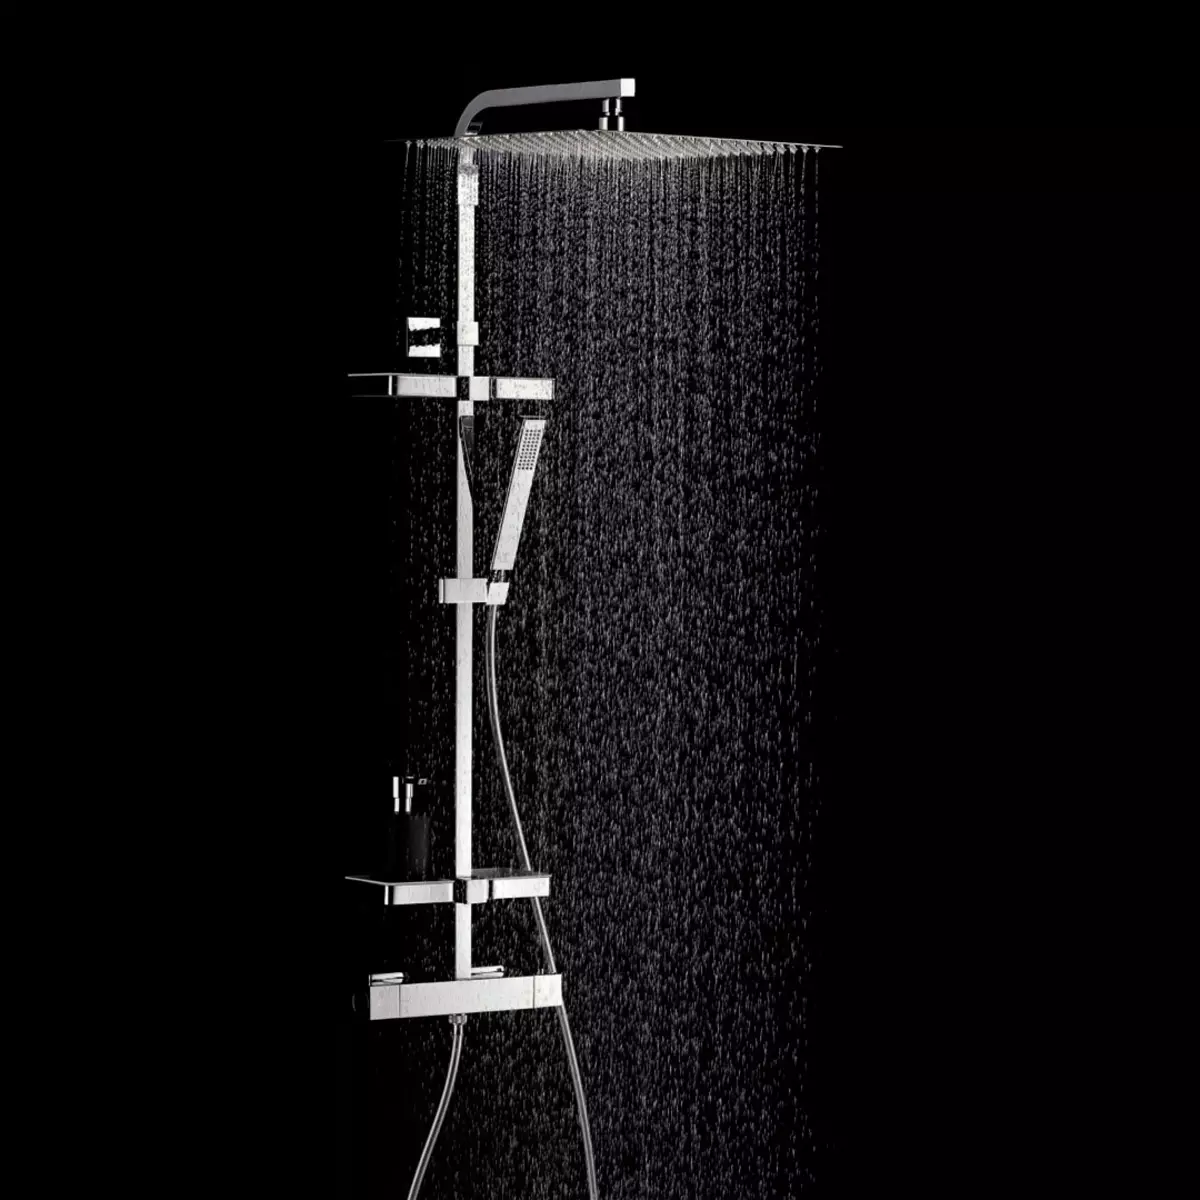 Rengên Shower bi Mixer: Pergalên bi tevlihevî û serşokê jorîn, bi ava vexwarinê û serokên din ên bi rind û rûkalek din re vedihewîne 21379_3